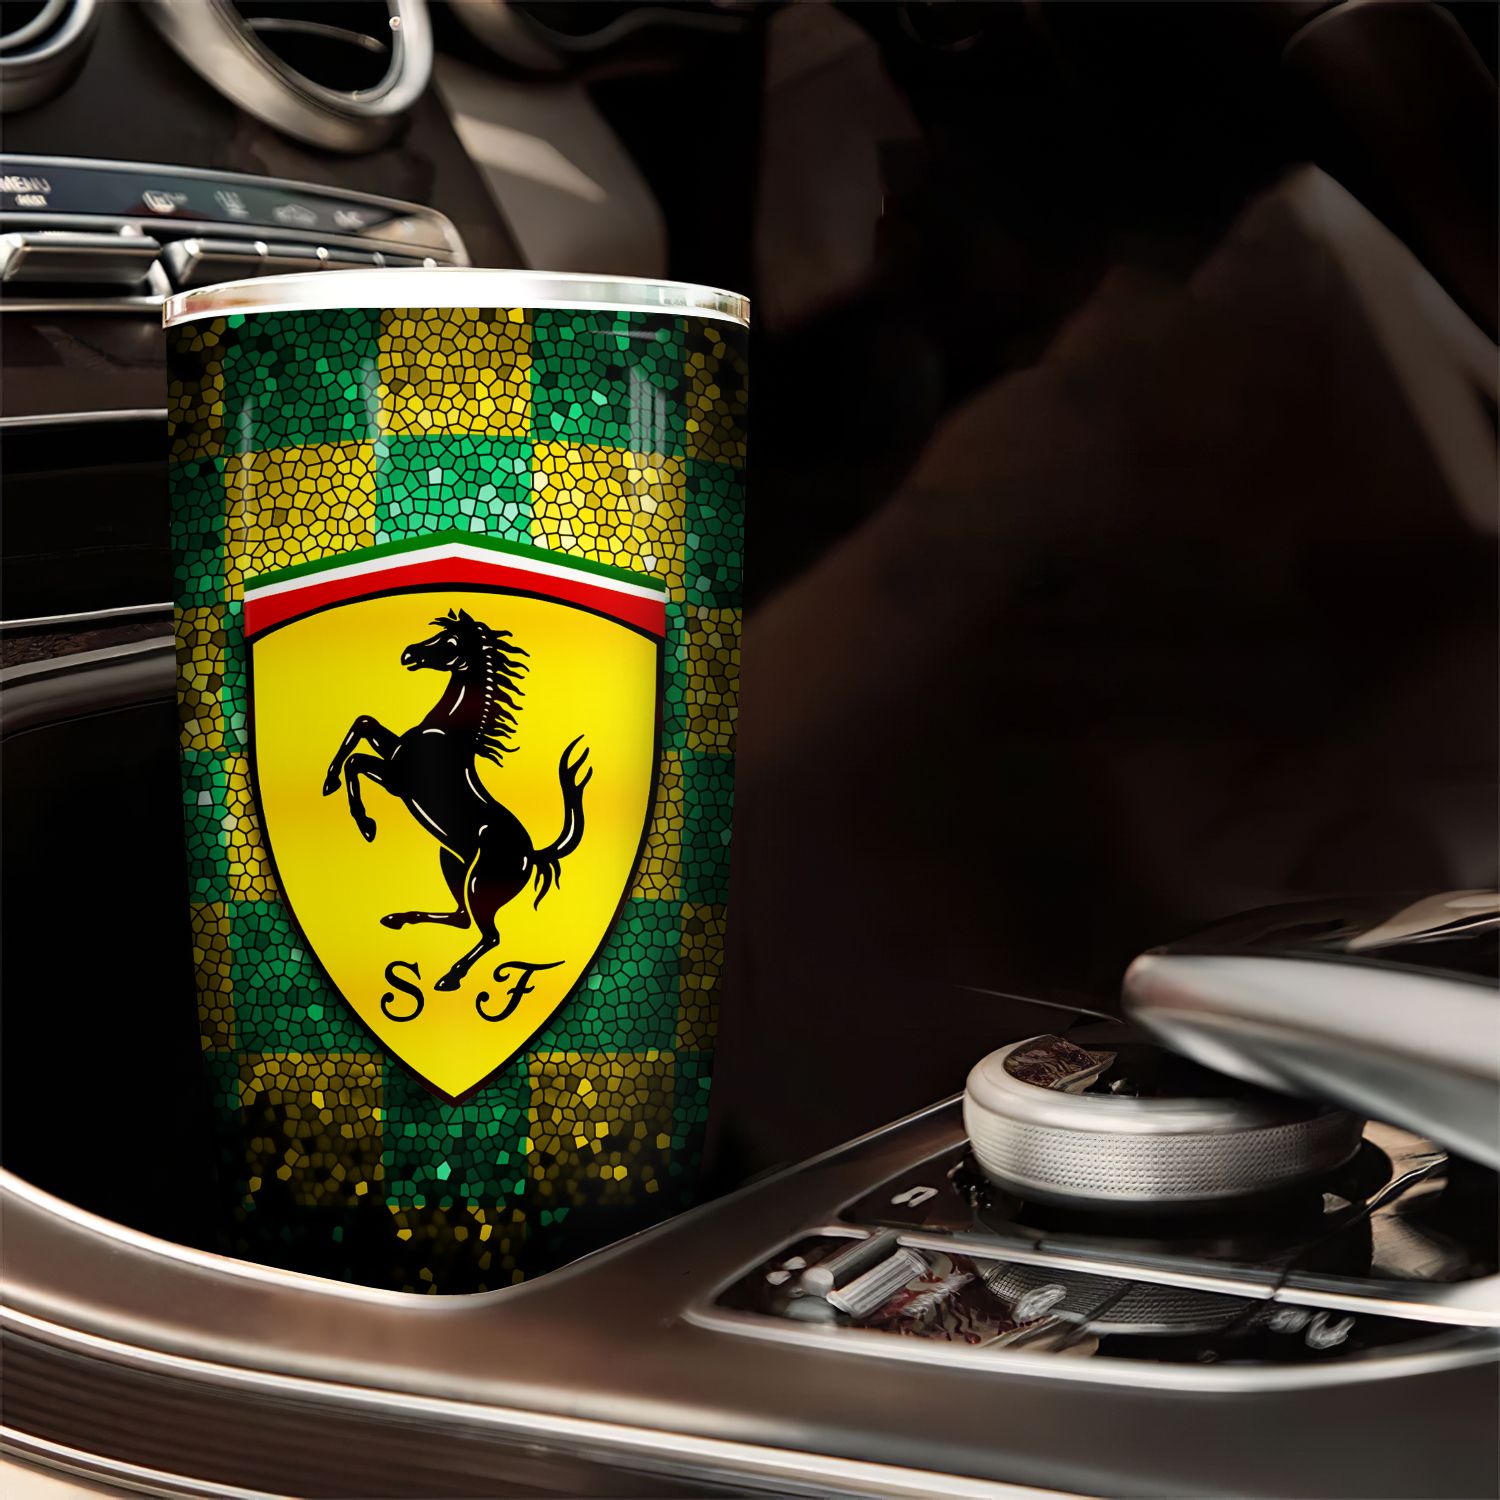  Logo xe oto Ferrari Go Drink Cốc Giữ Nhiệt 600ml In tên, hình ảnh theo yêu cầu 